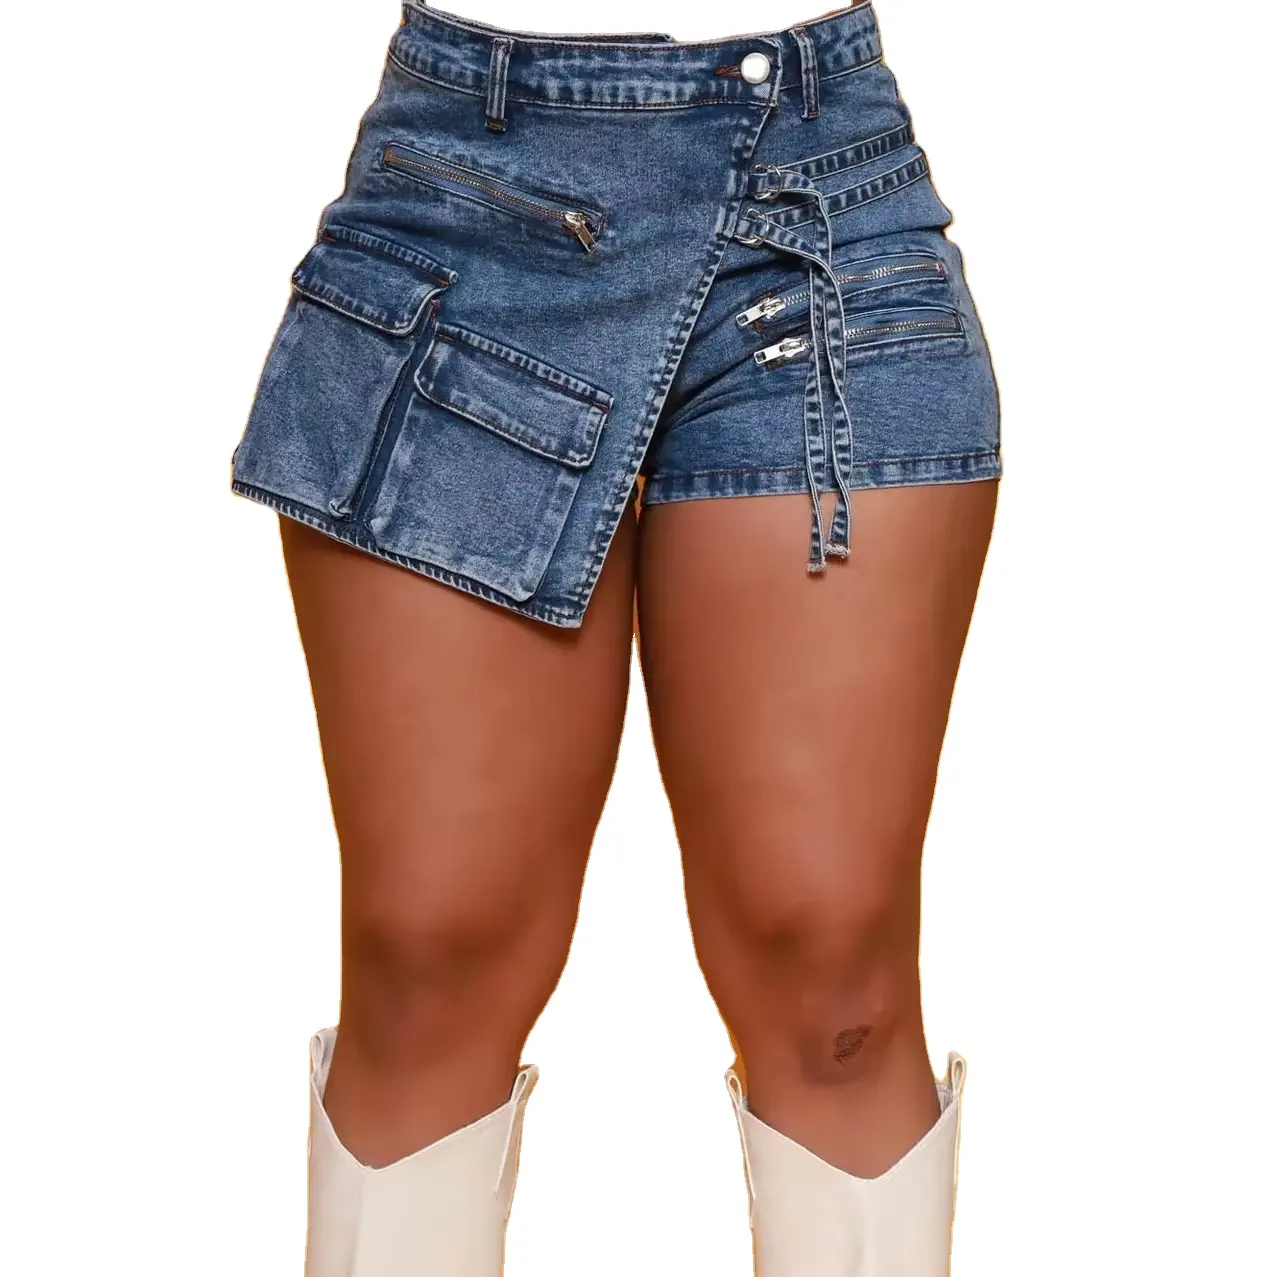 Nuovo design skinny sexy e sottile da ragazza jeans stretti stretti giovani ragazze sexy skinny jeans pantaloni per donna con tasche cargo